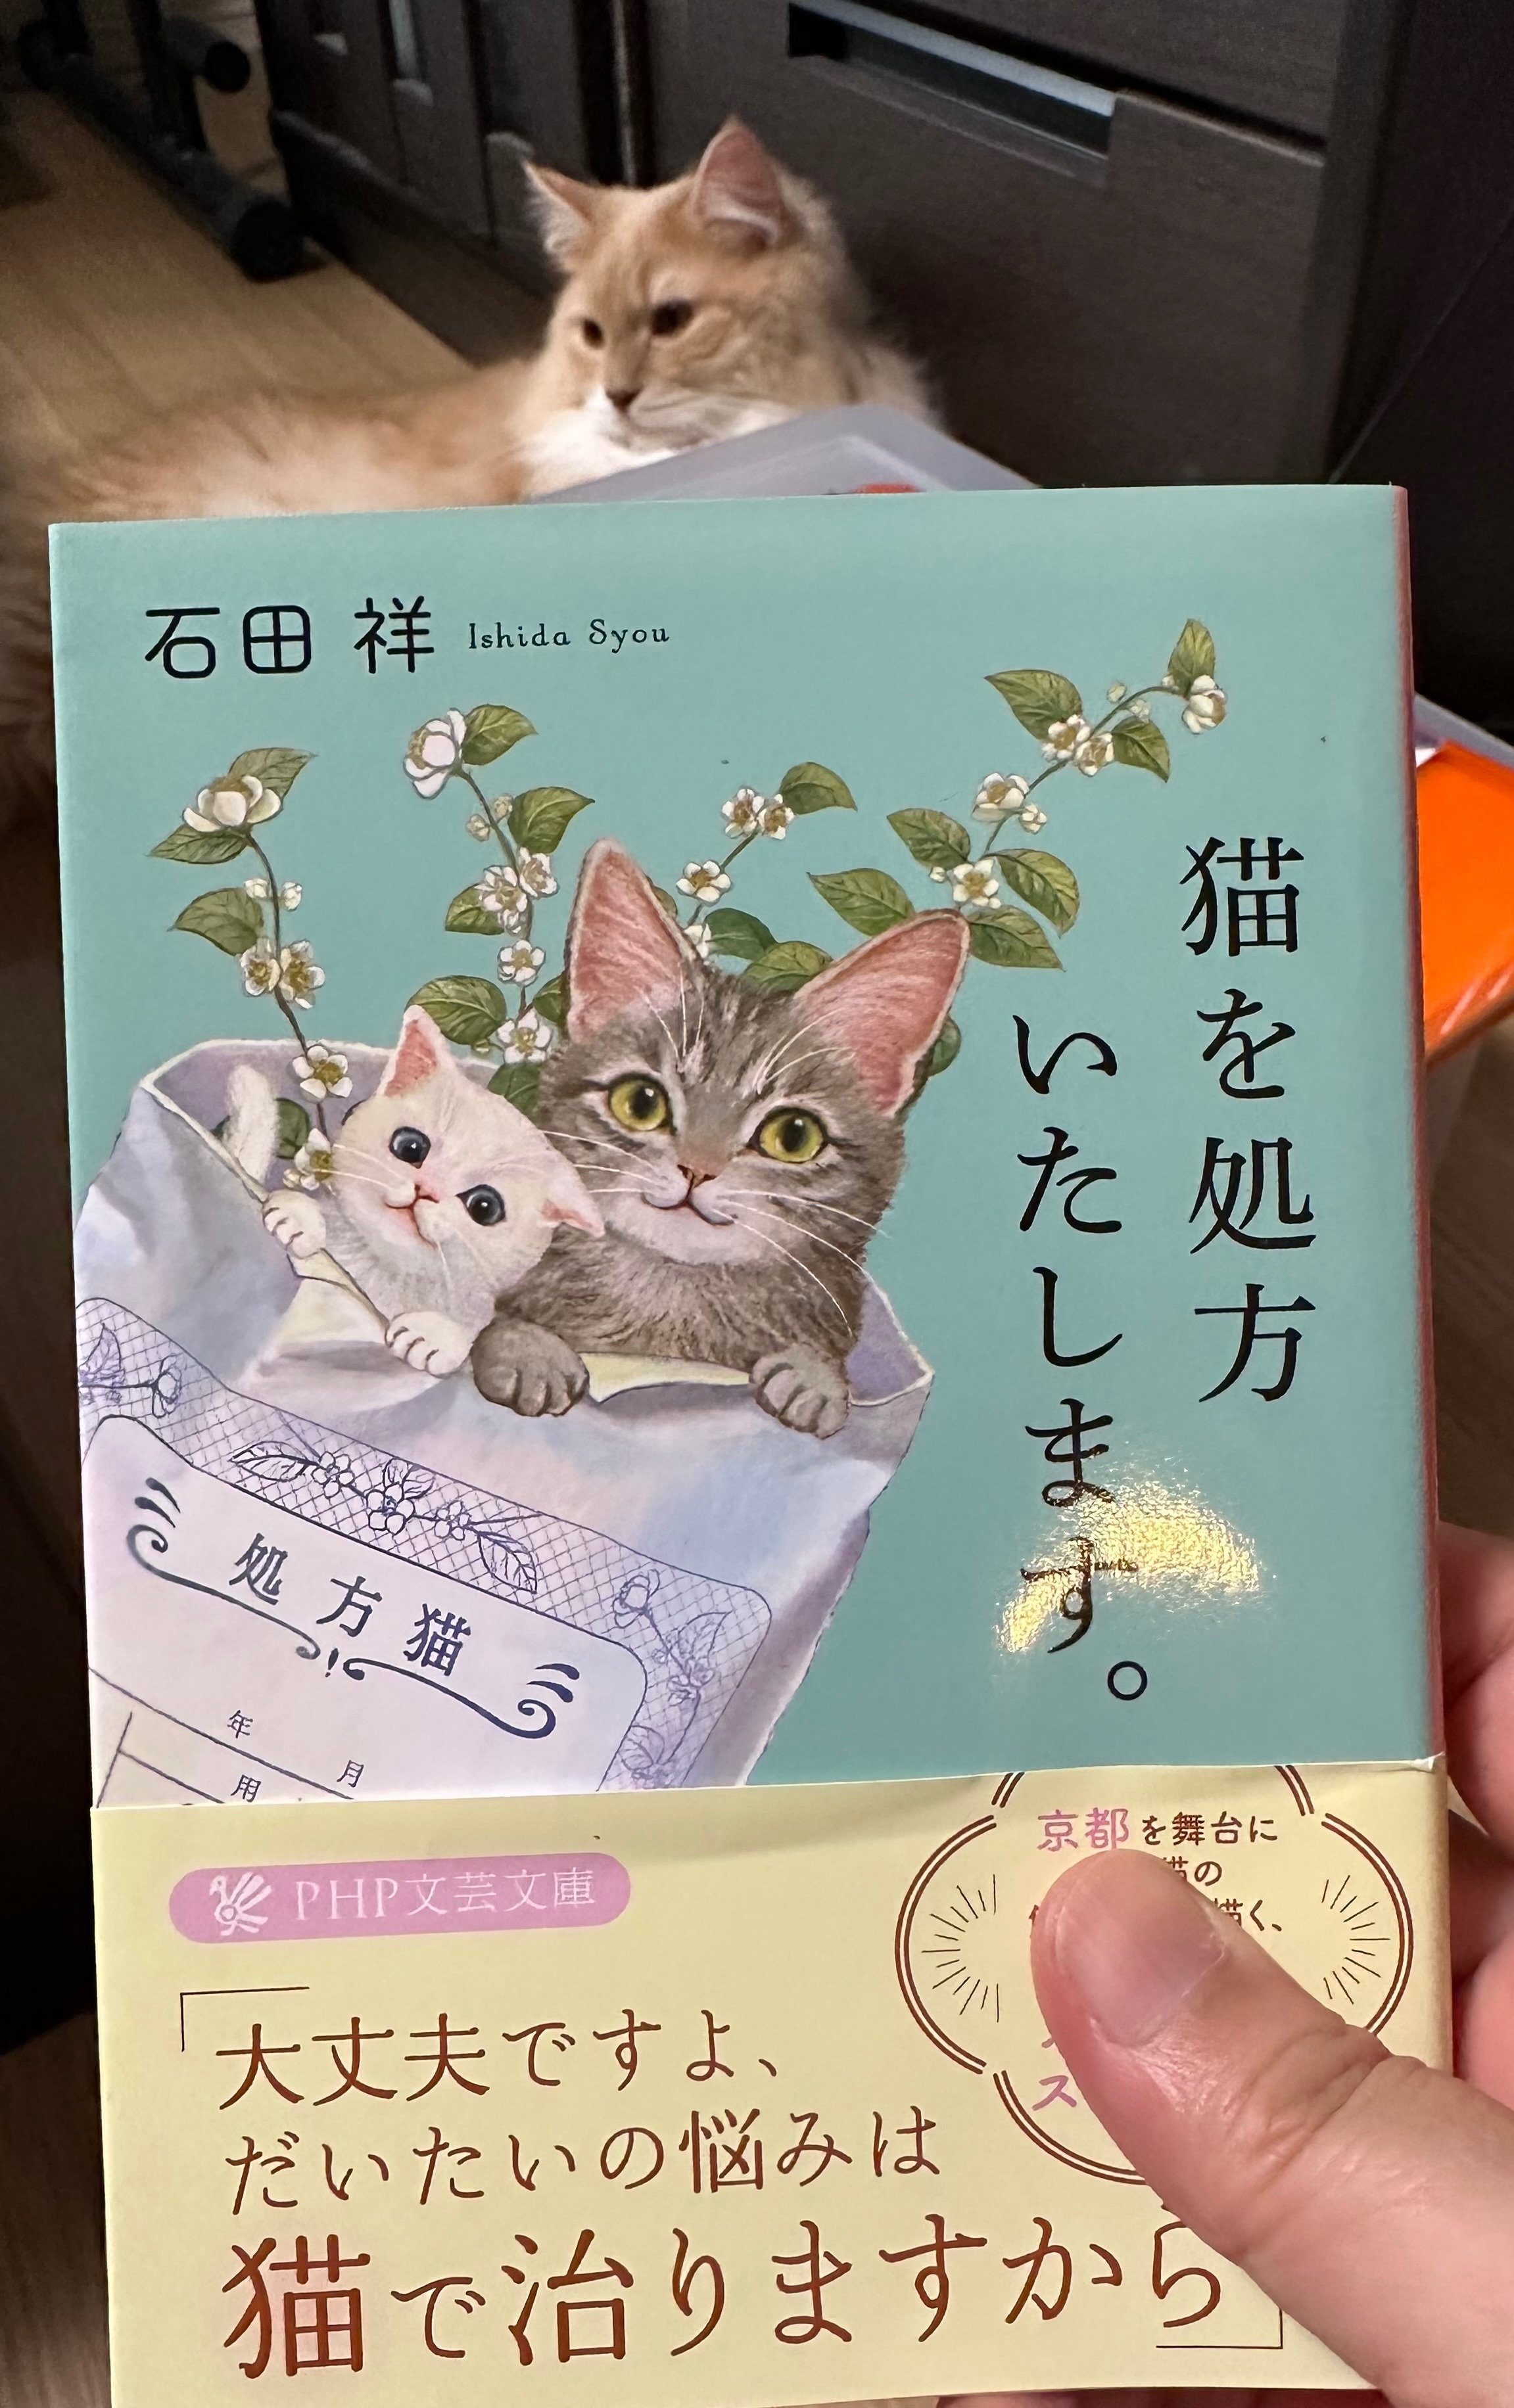 読みました。「猫を処方いたします。」石田 祥｜あつぽん